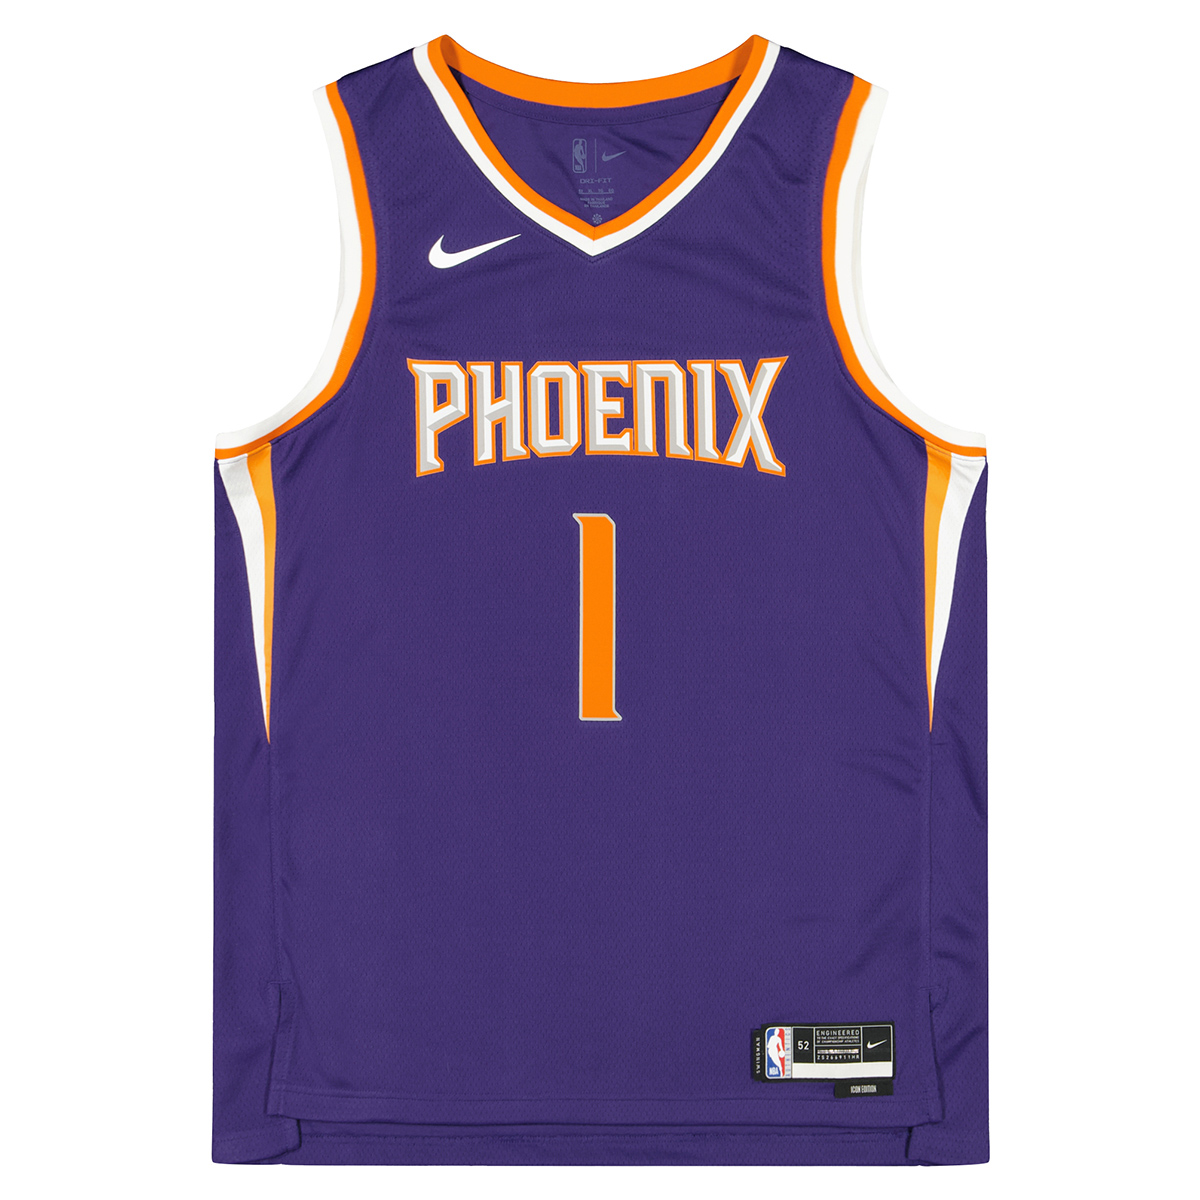 Men's Phoenix Suns Jersey, Devin Booker Basketball Uniform #1